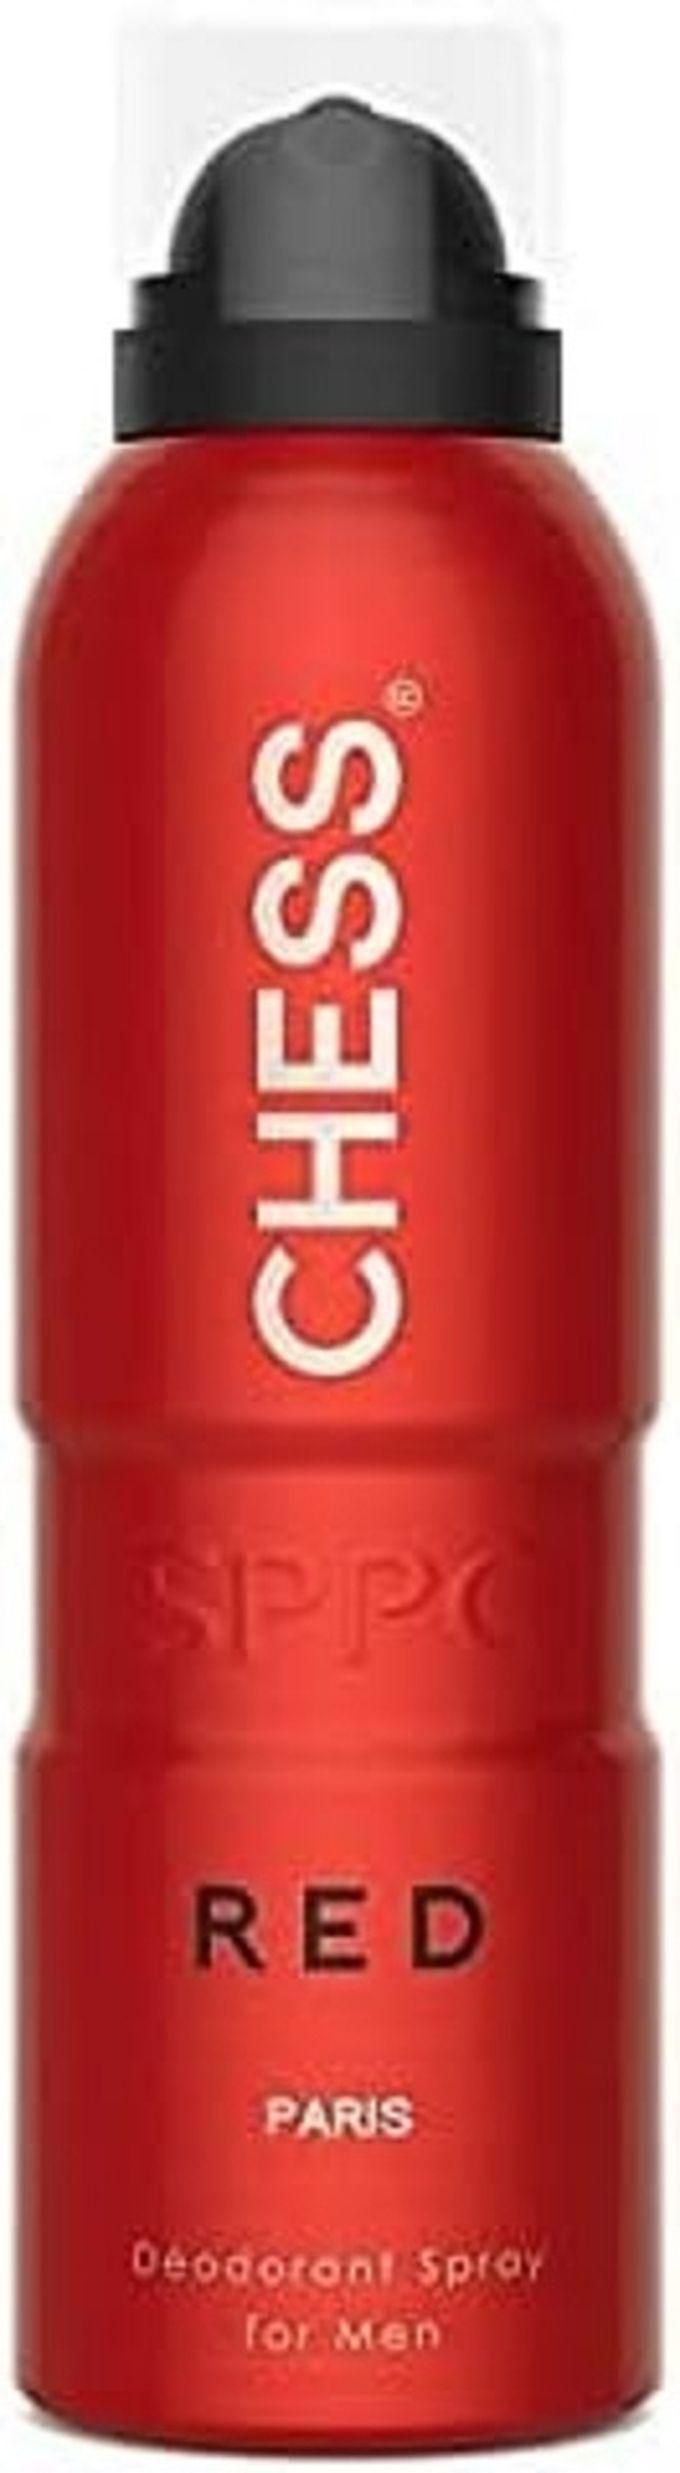 Paris Bleu Chess Deodorant Spray For Men 200ml